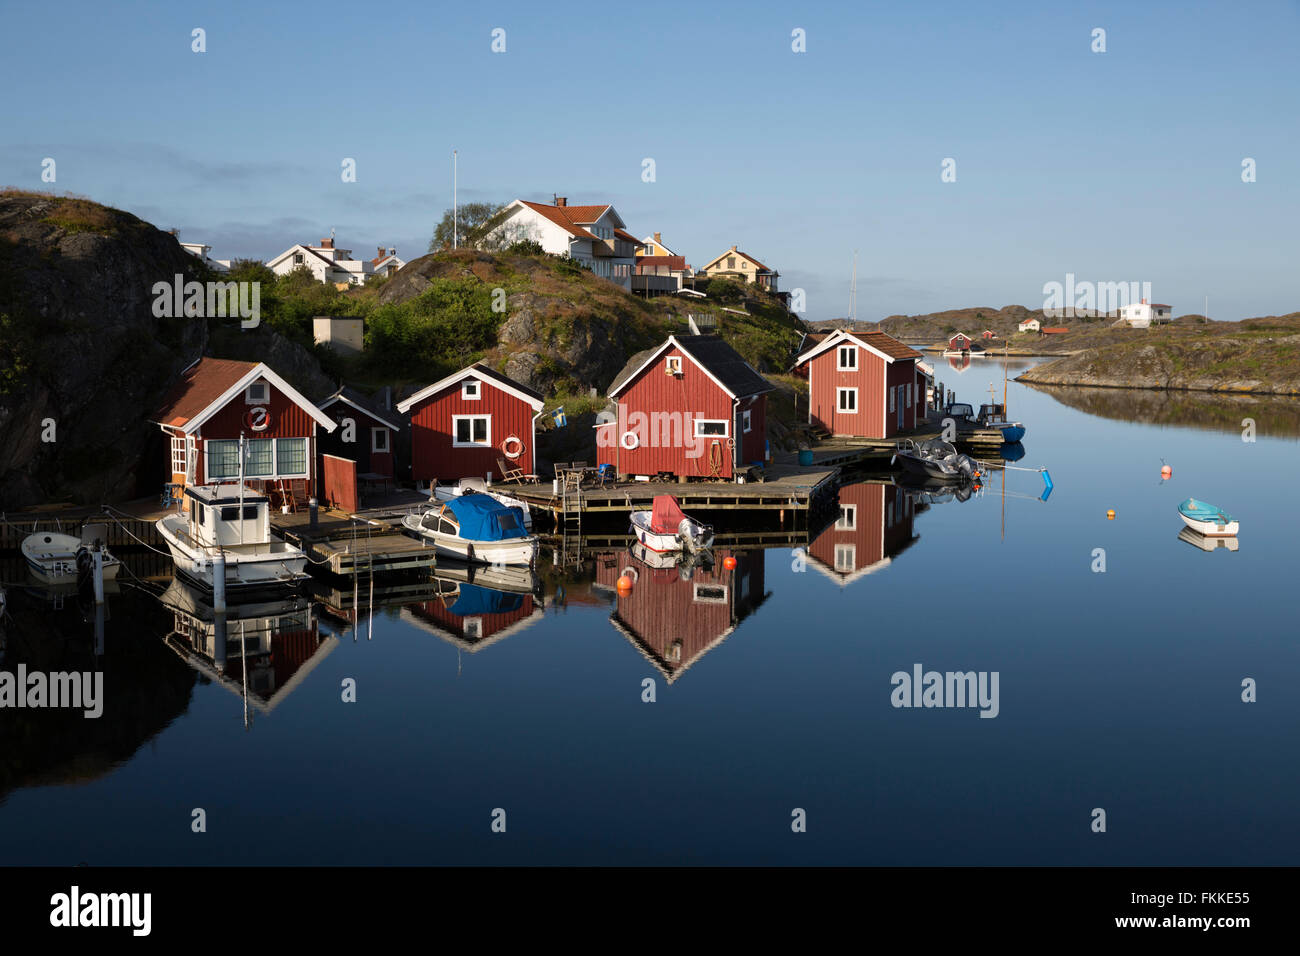 Tradizionale rosso falu case di pescatori, Stocken, Orust, Bohuslän, sulla costa sud-ovest della Svezia, Svezia, Scandinavia, Europa Foto Stock